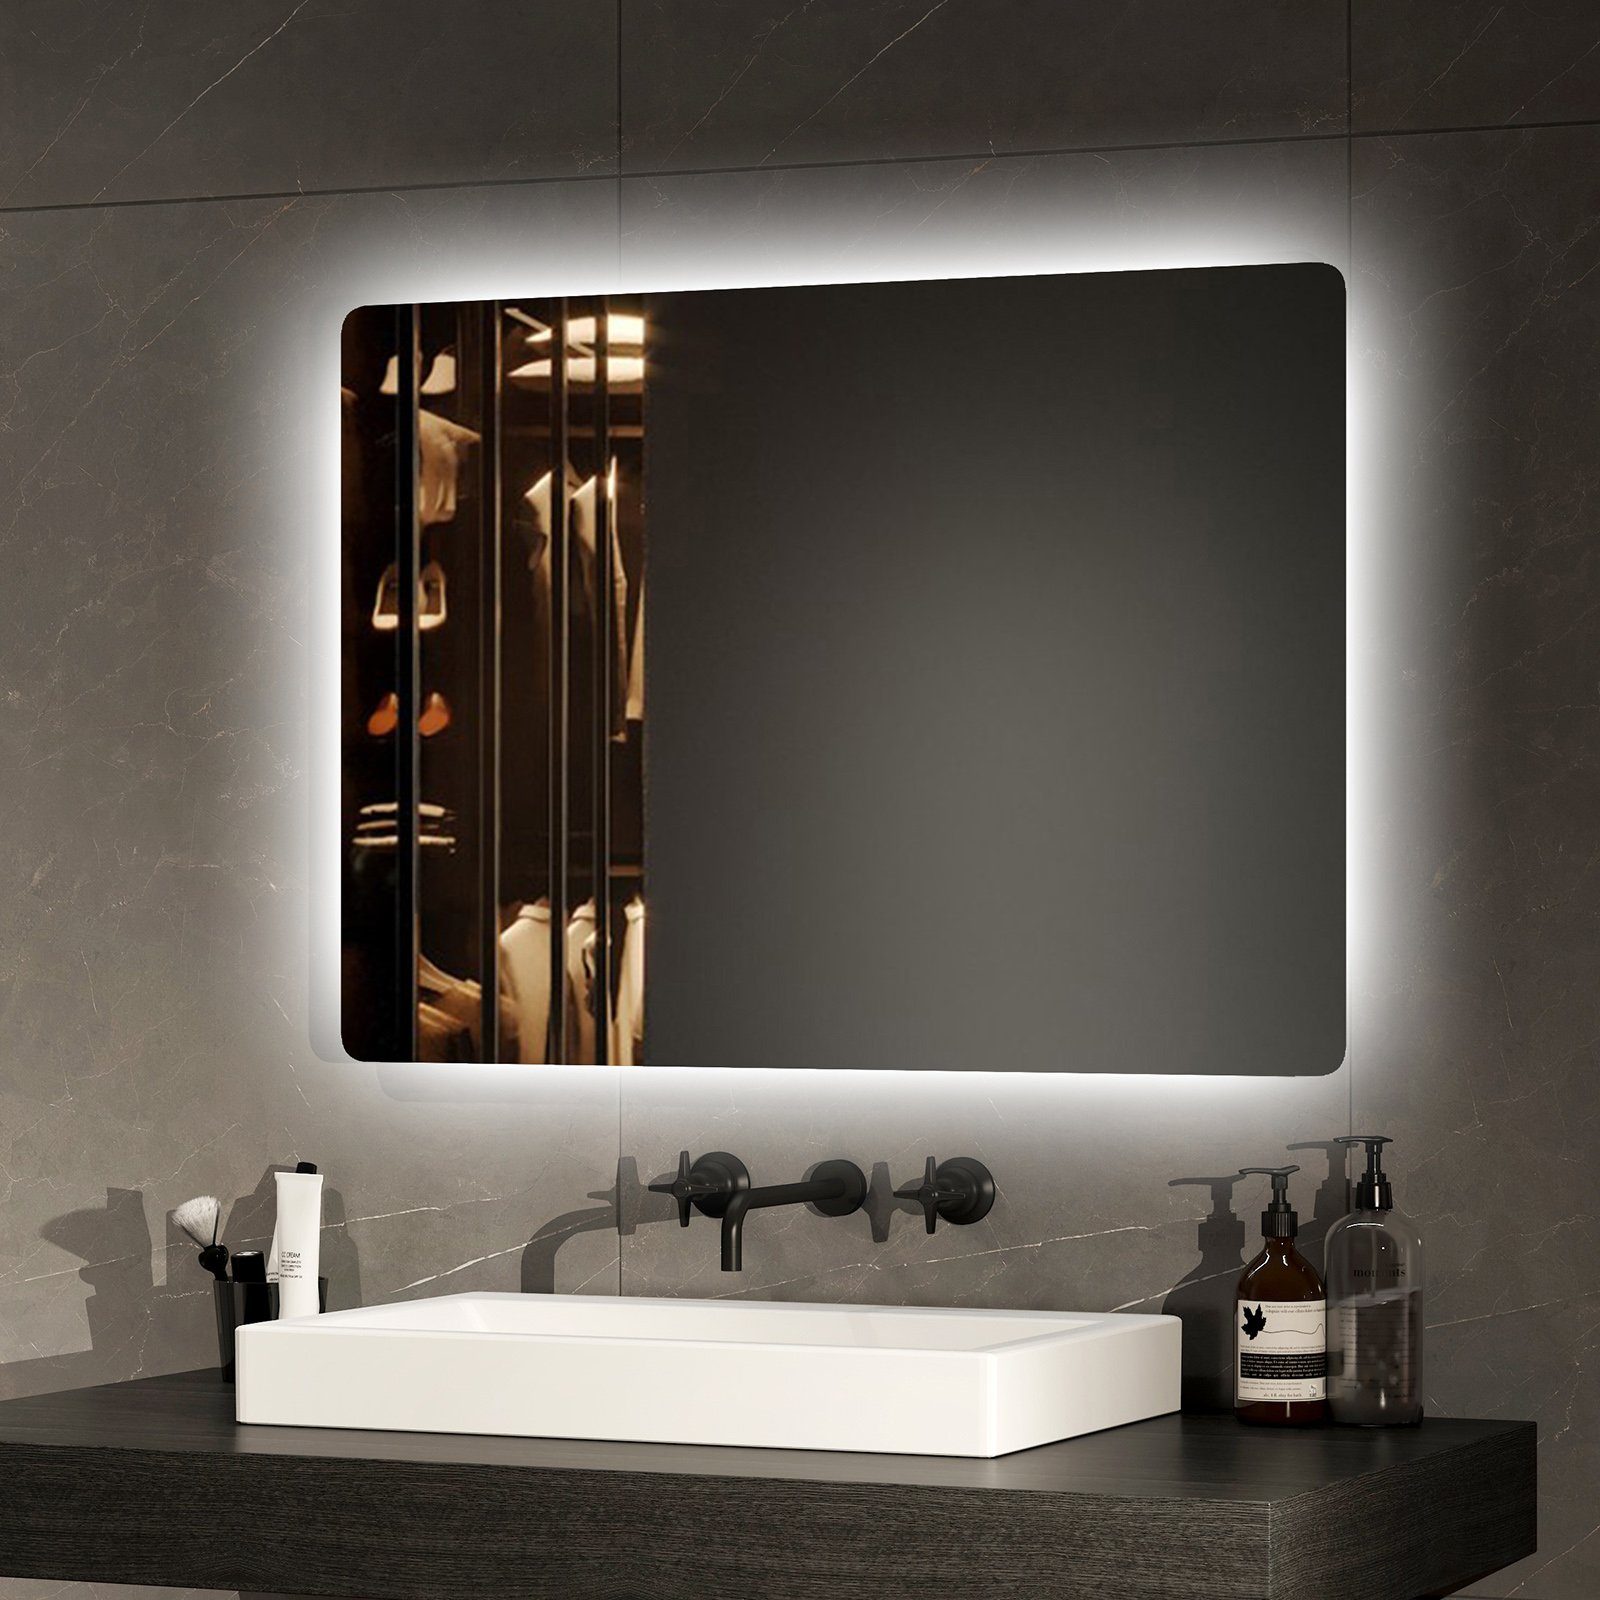 EMKE Зеркало для ванной комнаты Зеркало для ванной комнаты mit Beleuchtung Текстиль для ваннойspiegel Wandspiegel mit LED, Kaltweißes Licht 6500K 70-80cm